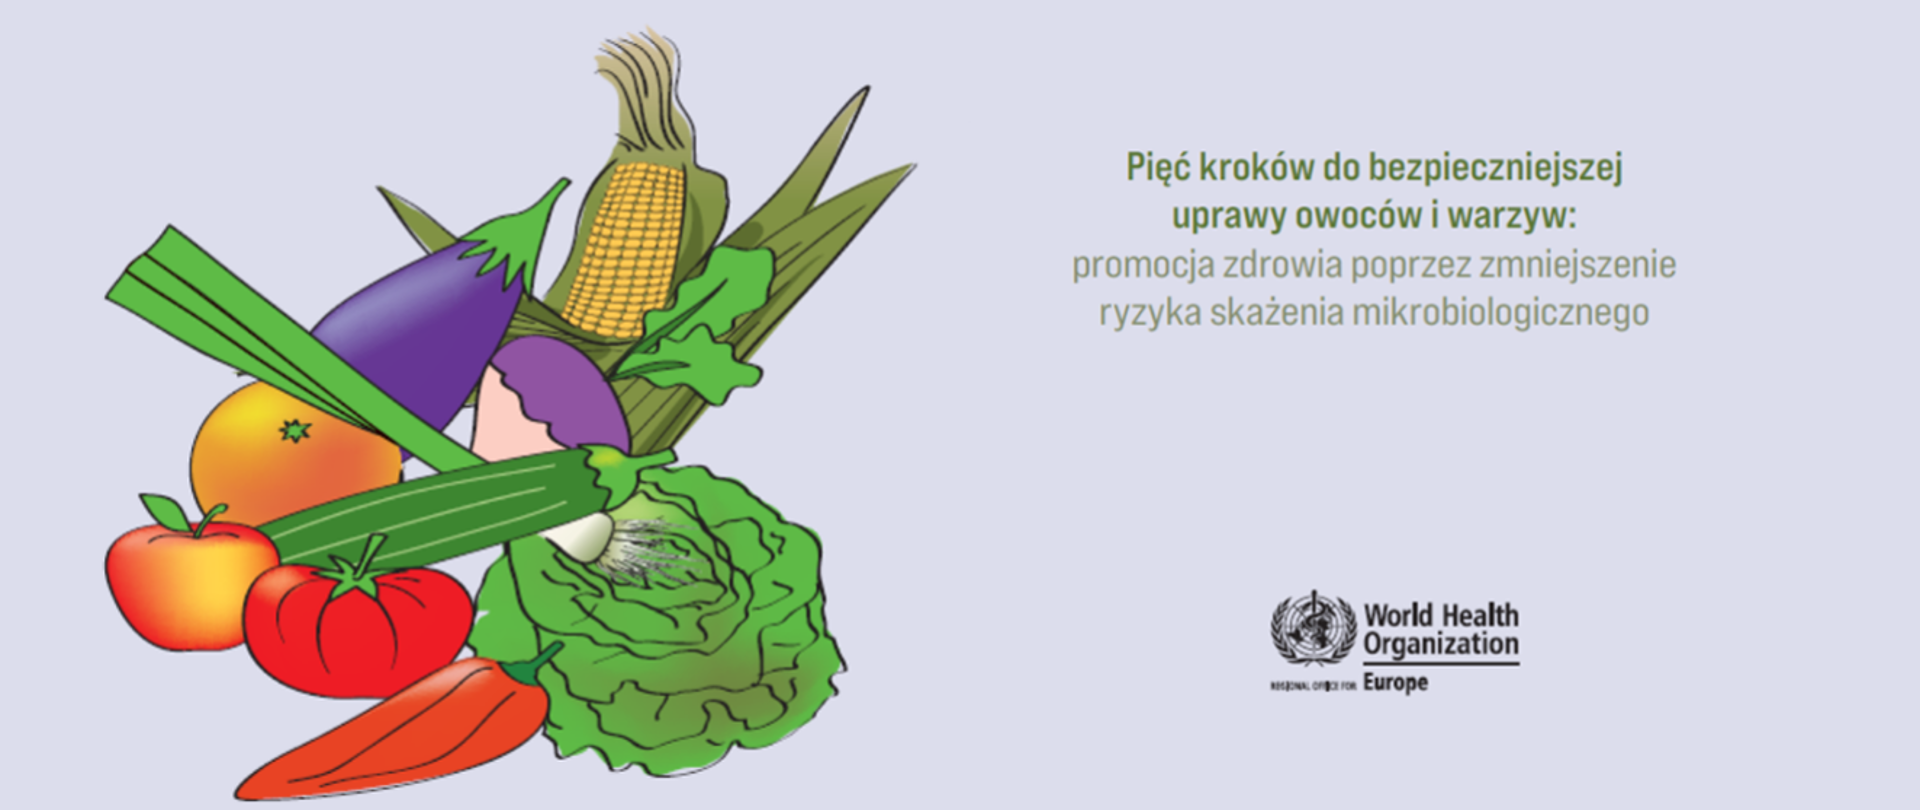 Pięć kroków do bezpieczniejszej uprawy owoców i warzyw: promocja zdrowia poprzez zmniejszenie ryzyka skażenia mikrobiologicznego